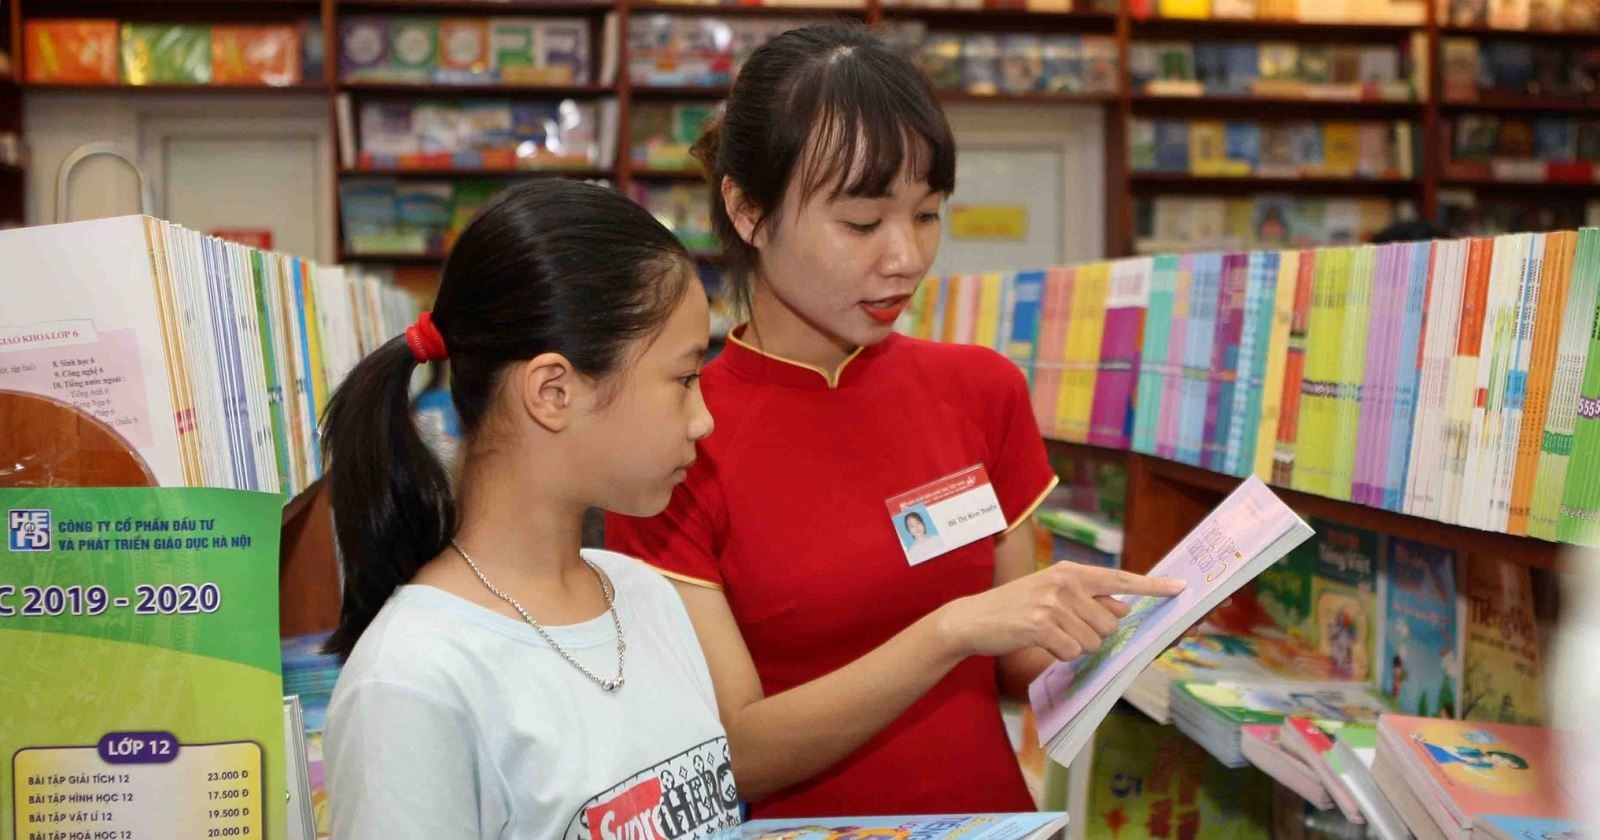 Hoạt động xuất bản sách ở Việt Nam trước bối cảnh chuyển đổi số